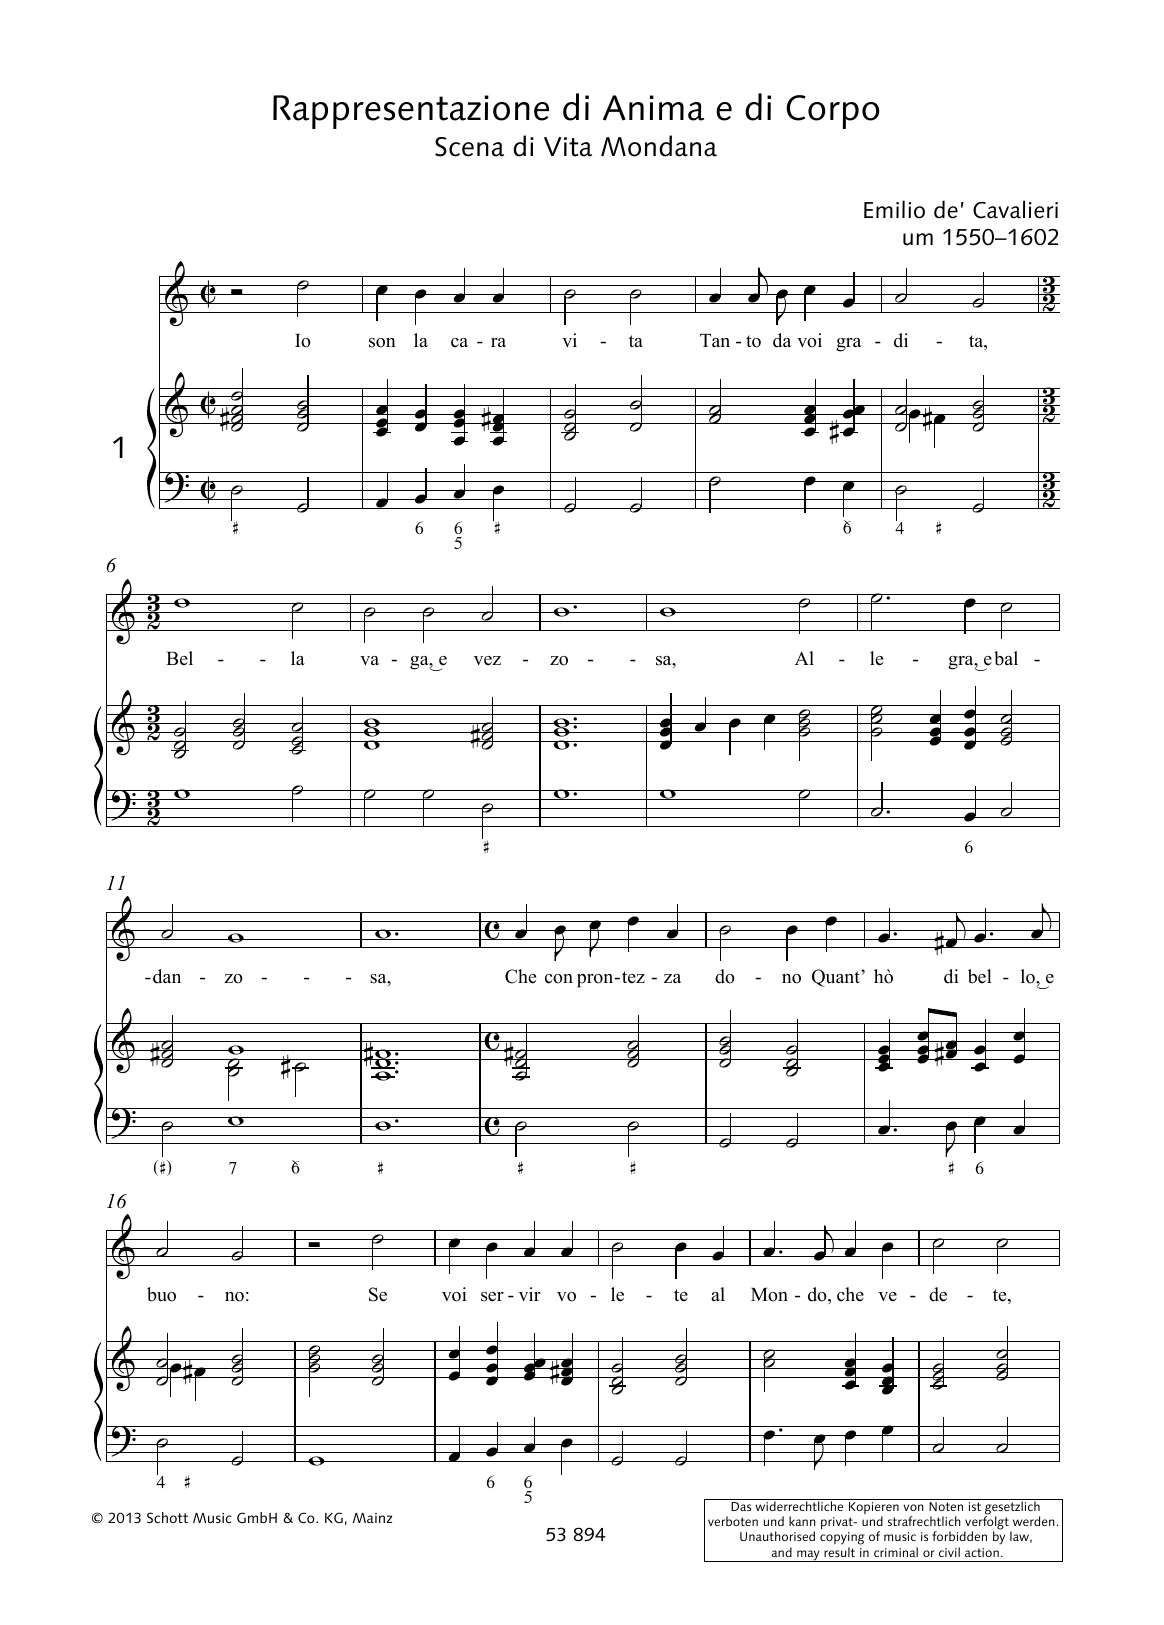 Download Emilio de Cavalieri Io son la cara vita Tanto da voi grandita Sheet Music and learn how to play Piano & Vocal PDF digital score in minutes